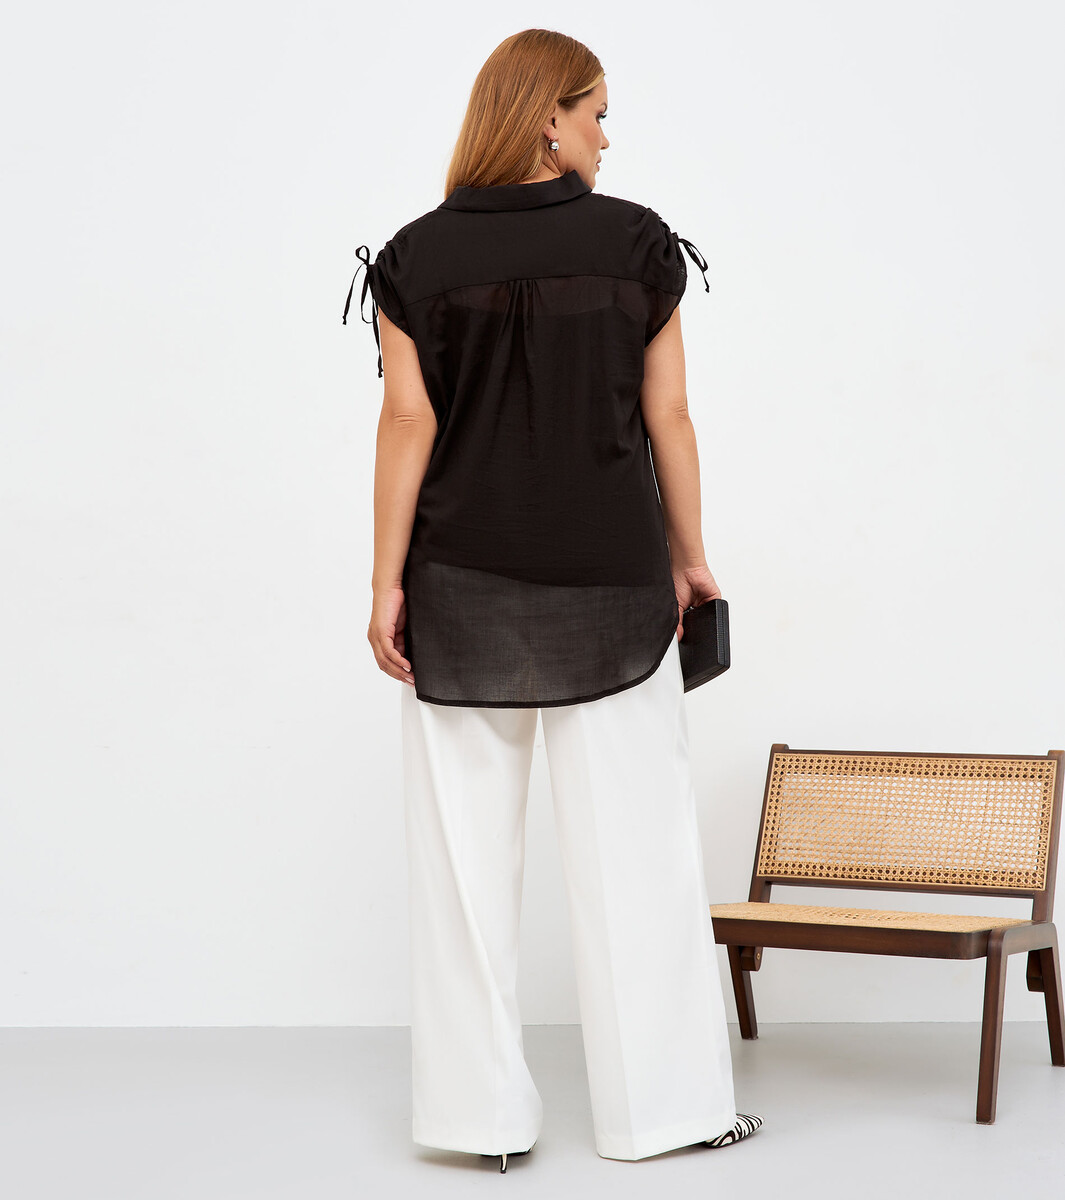 Комплект женский (туника, блузка) PANDA, размер 48, цвет черный 01182633 - фото 3